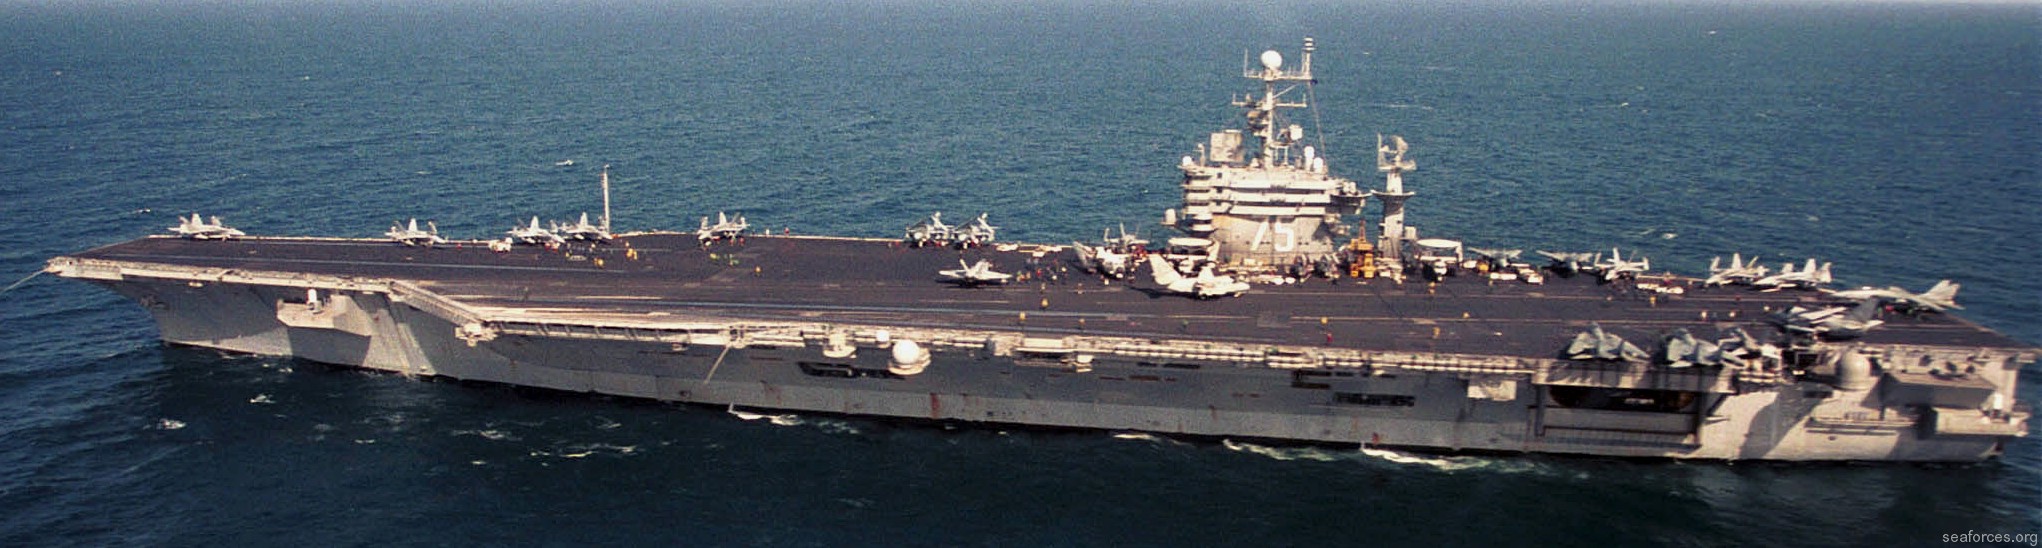 uss harry s. truman cvn-75 aircraft carrier 50 operation southern watch